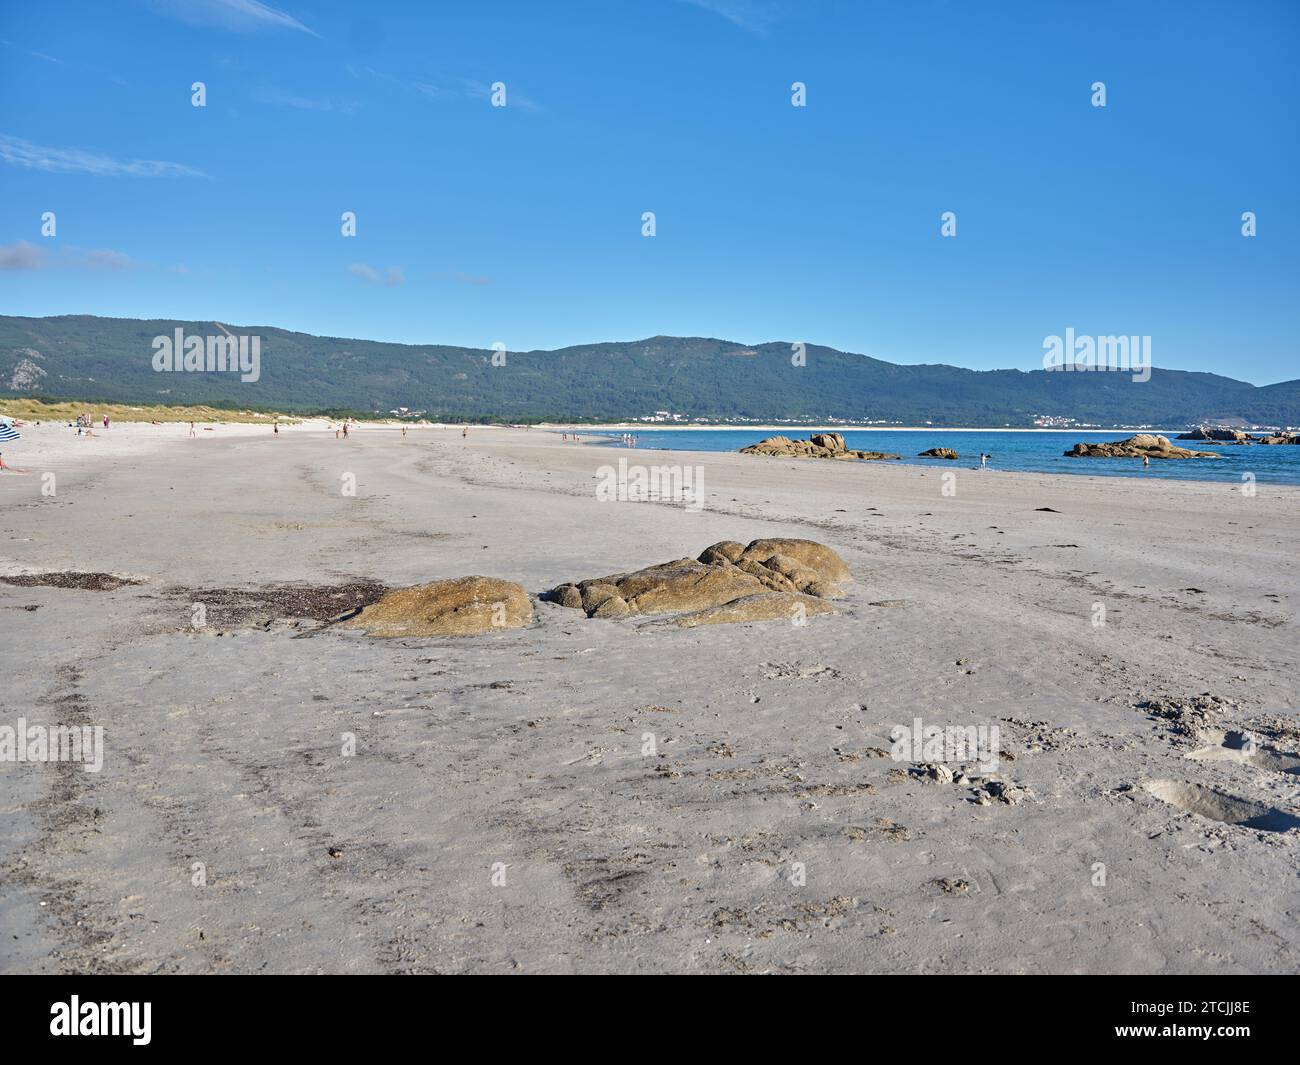 Playa de Carnota, situada en Galicia, es considerada la más larga de la región, con una extensión de más de 7 km. Es popular por su belleza natural, s Stock Photo